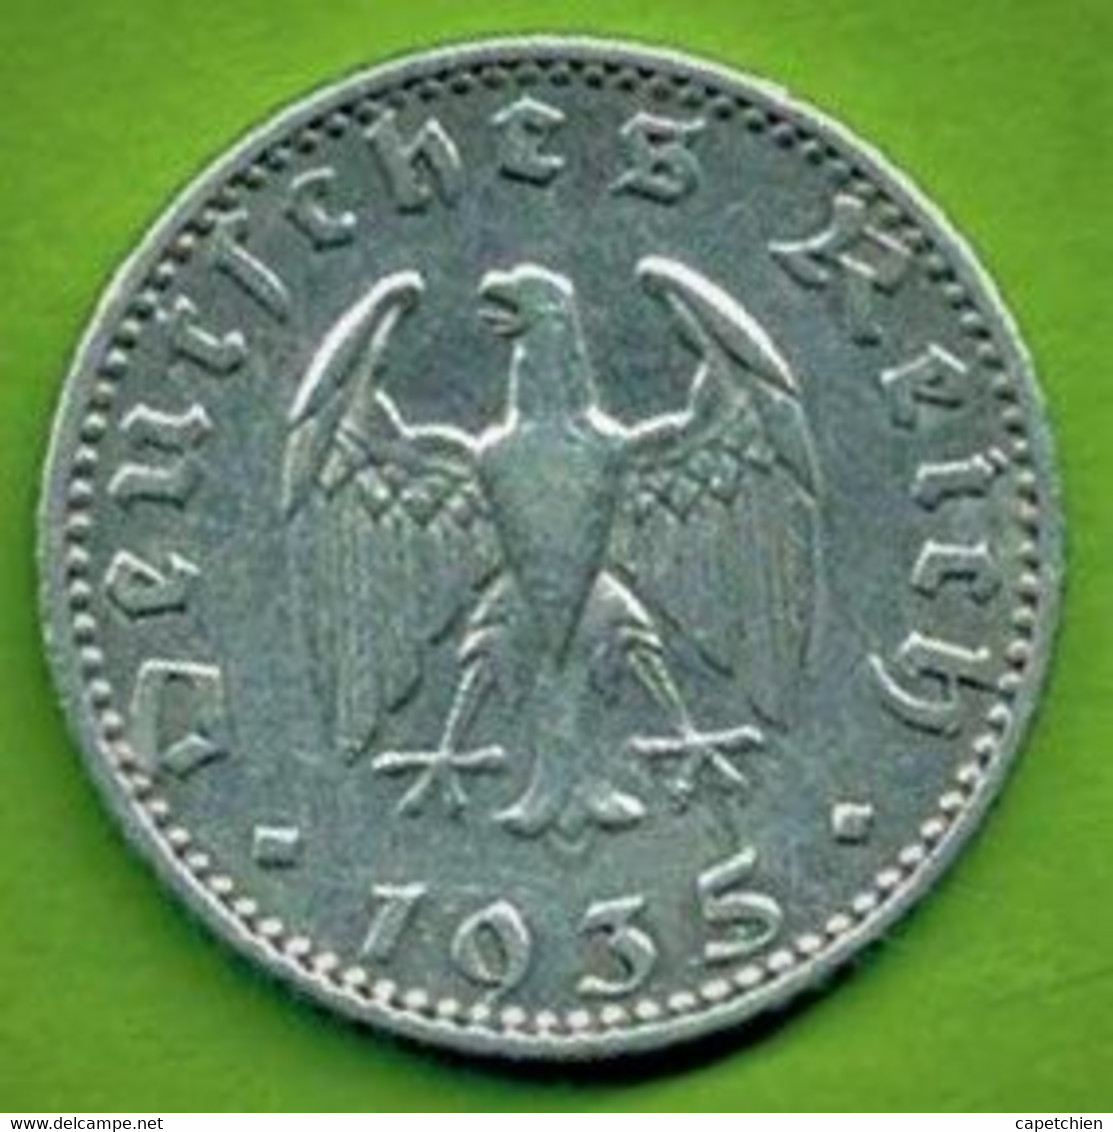 ALLEMAGNE / FÜNFZIG  PFENNIG  / 1935 J / ALU / SUP - 50 Reichspfennig